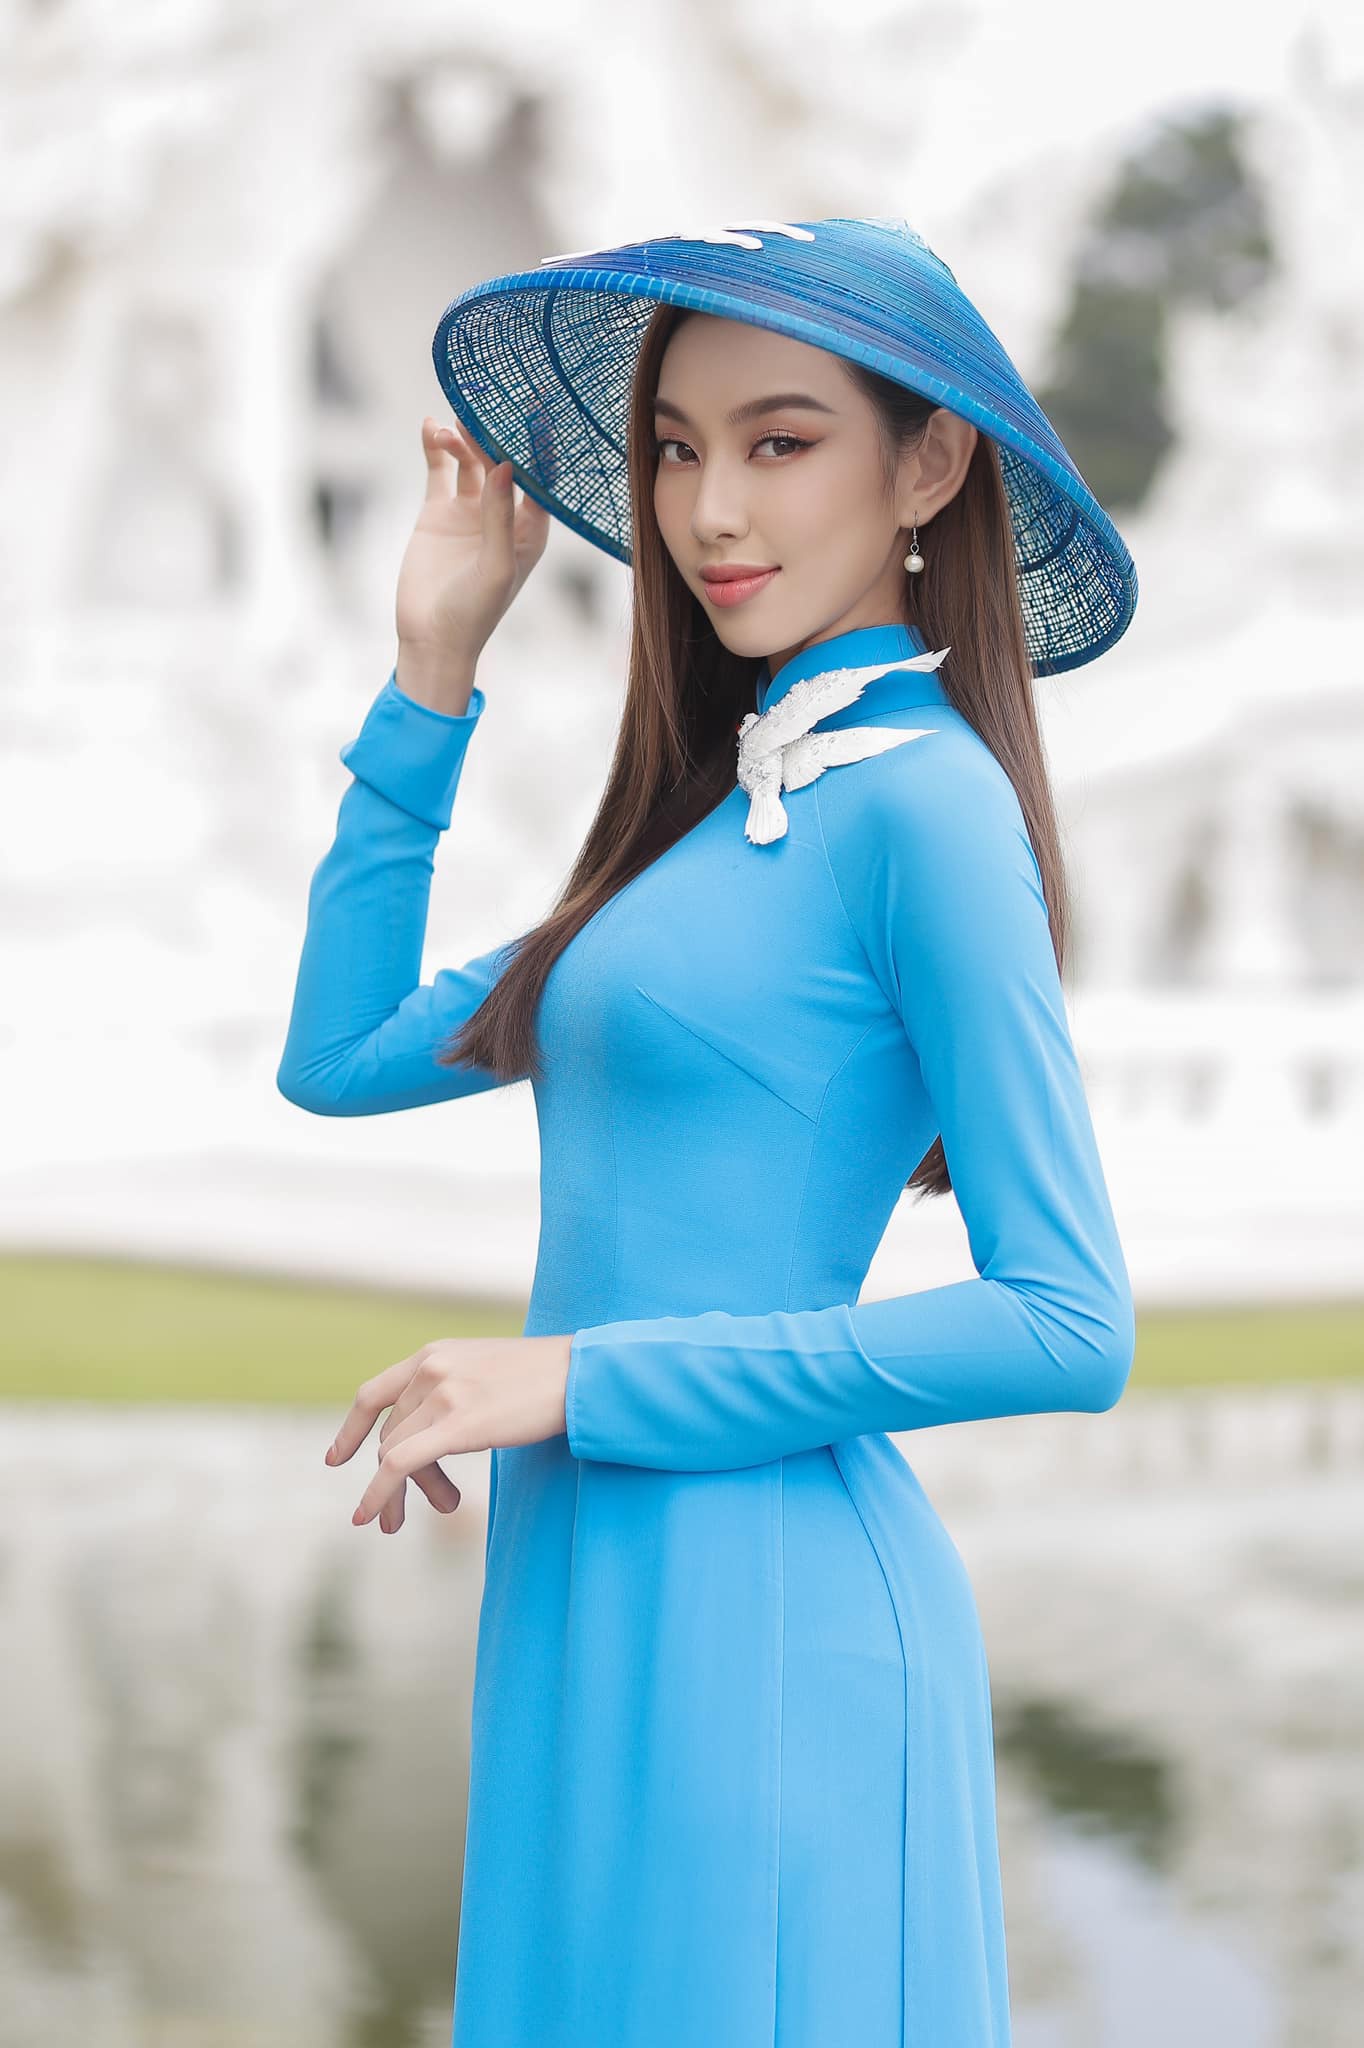 Hoa hậu Nguyễn Thúc Thùy Tiên kiện bà Đặng Thùy Trang vì bị xúc phạm danh dự - Ảnh 1.